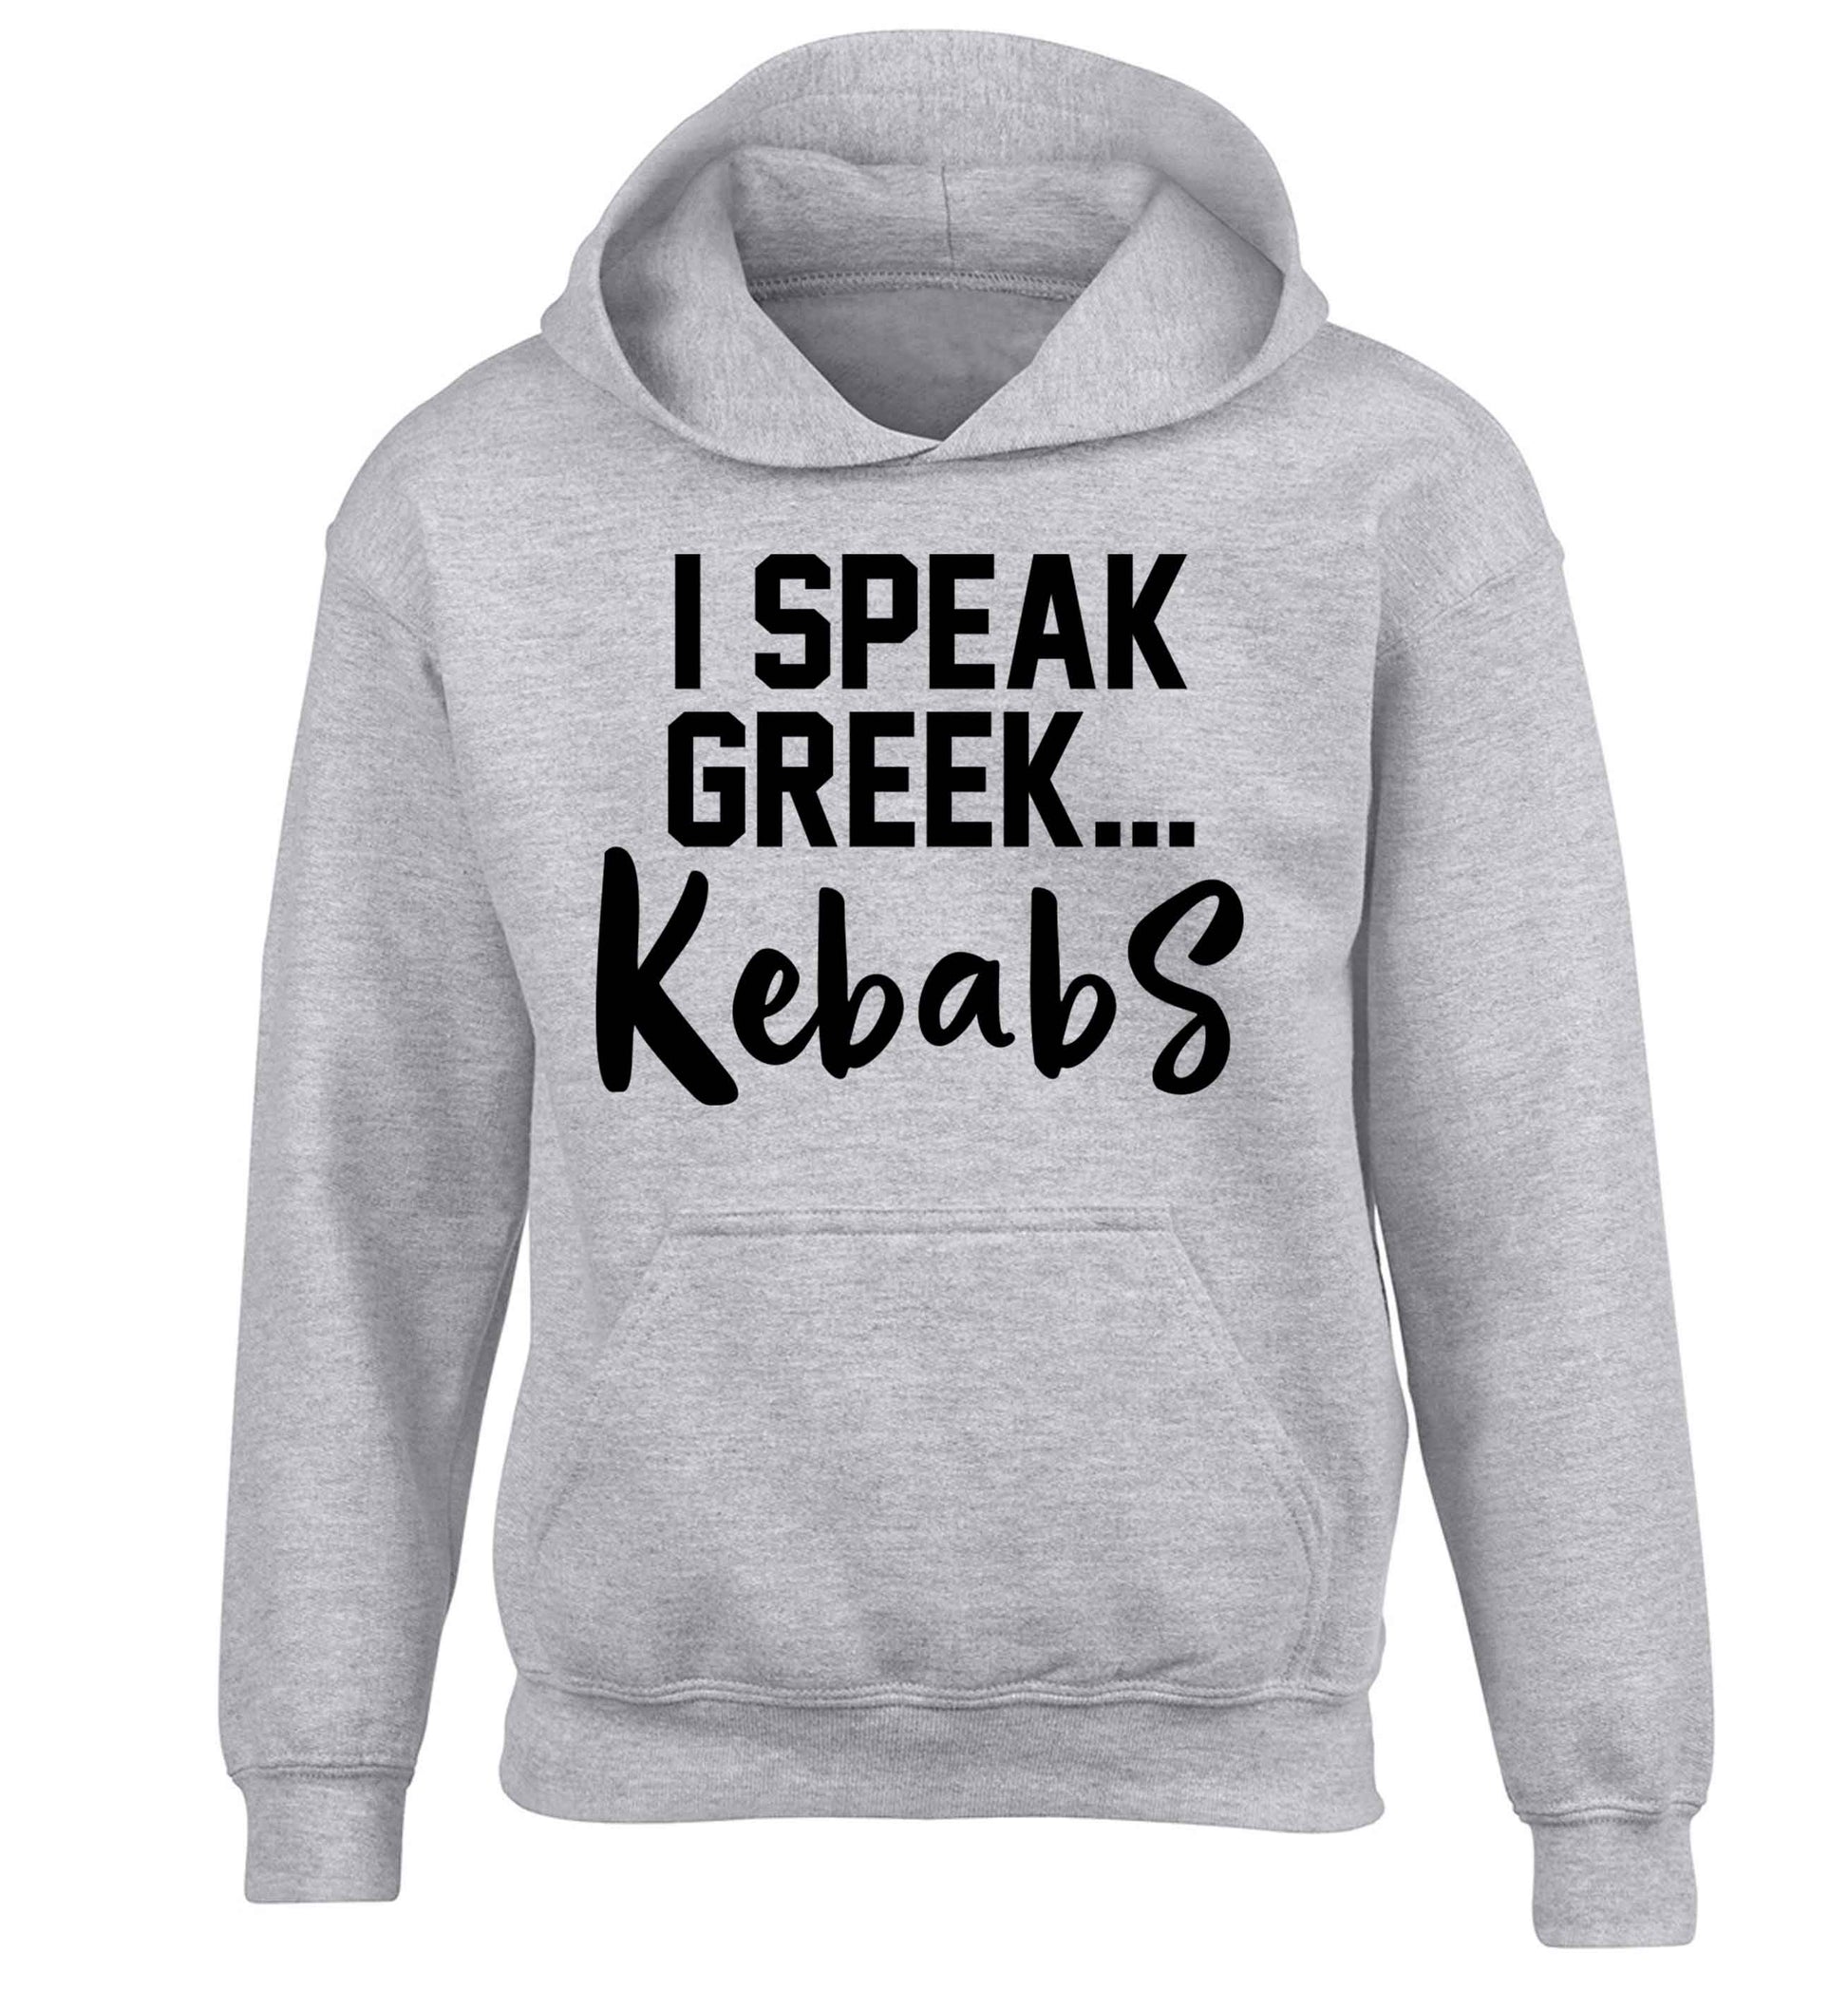 I speak Greek...kebabs children's grey hoodie 12-13 Years